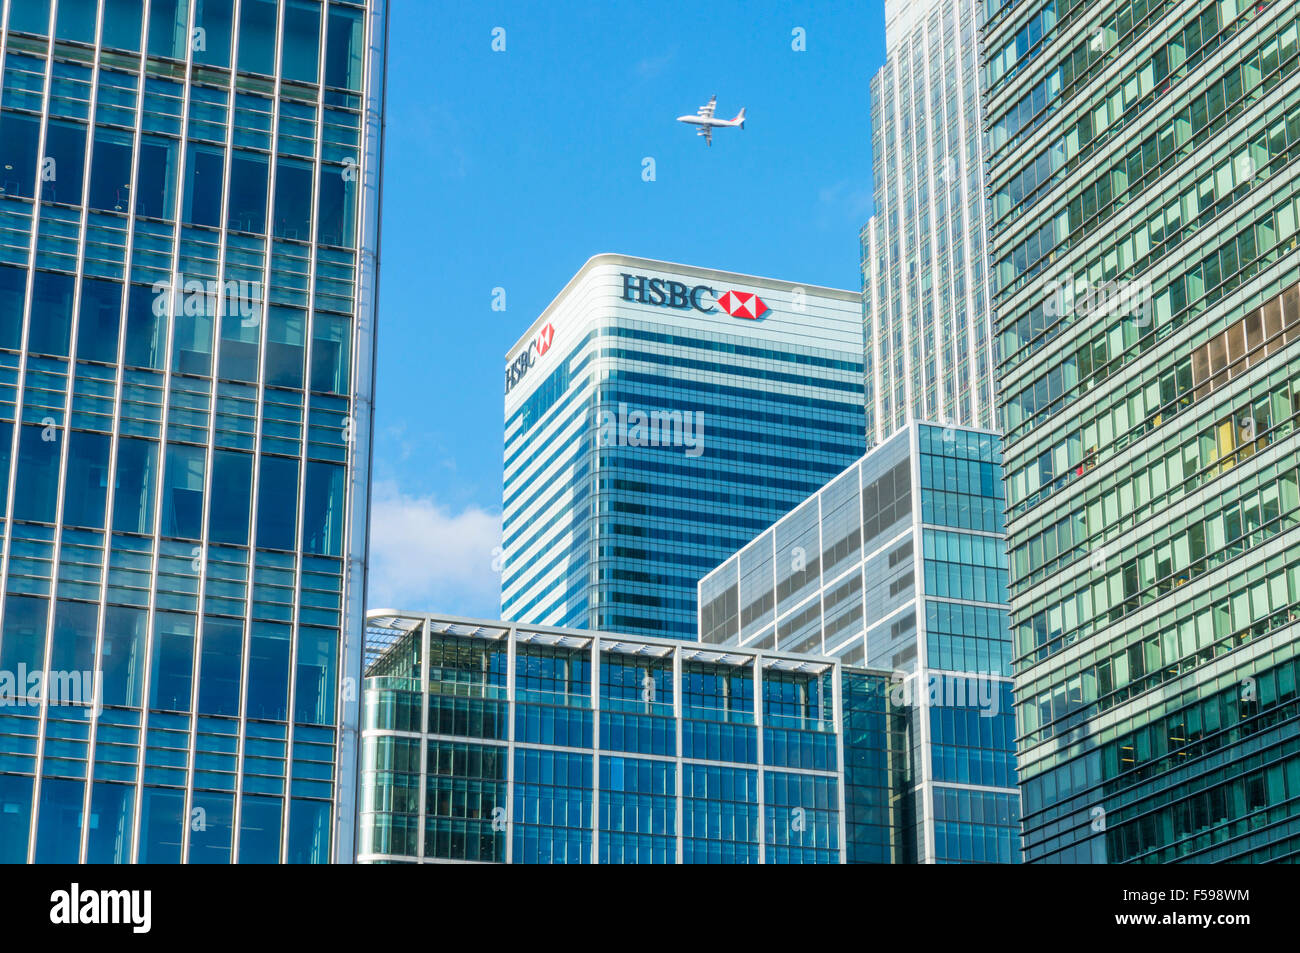 Canary Wharf gratte-ciel CBD voyage et HSBC financial district Docklands Londres Angleterre Royaume-uni GB EU Europe Banque D'Images